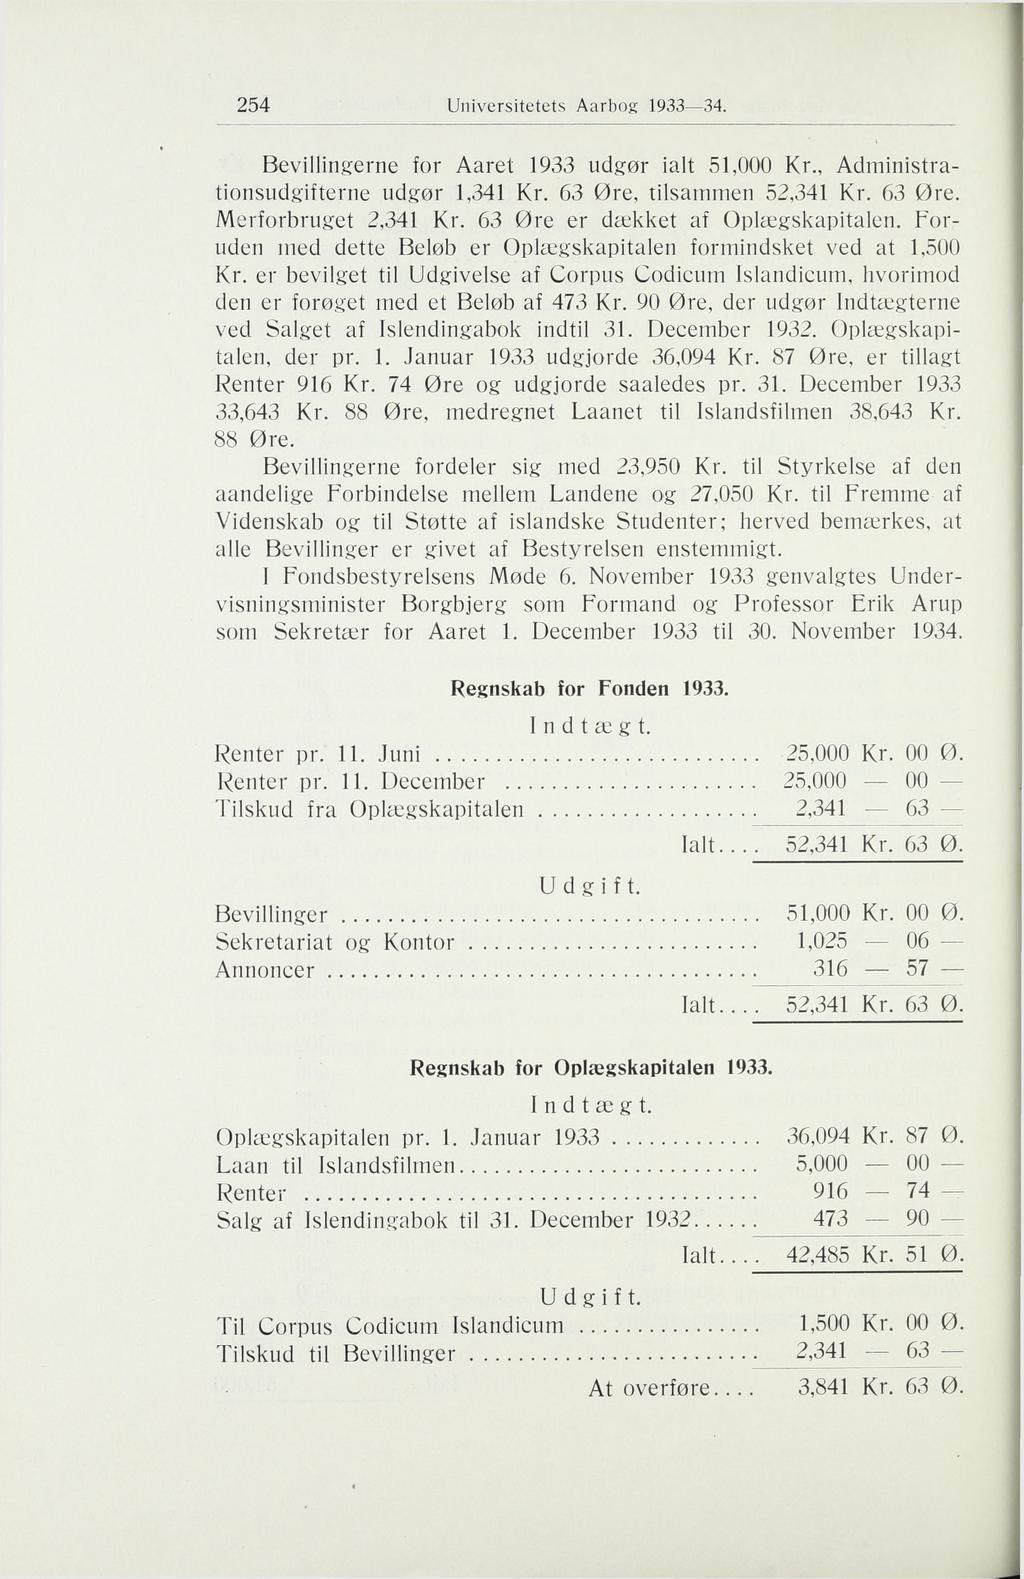 254 Bevillingerne for Aaret 1933 udgør ialt 51,000, Administrationsudgifterne udgør 1,341 63 Øre, tilsammen 52,341 63 Øre. Merforbruget 2,341 63 Øre er dækket af Opkegskapitalen.